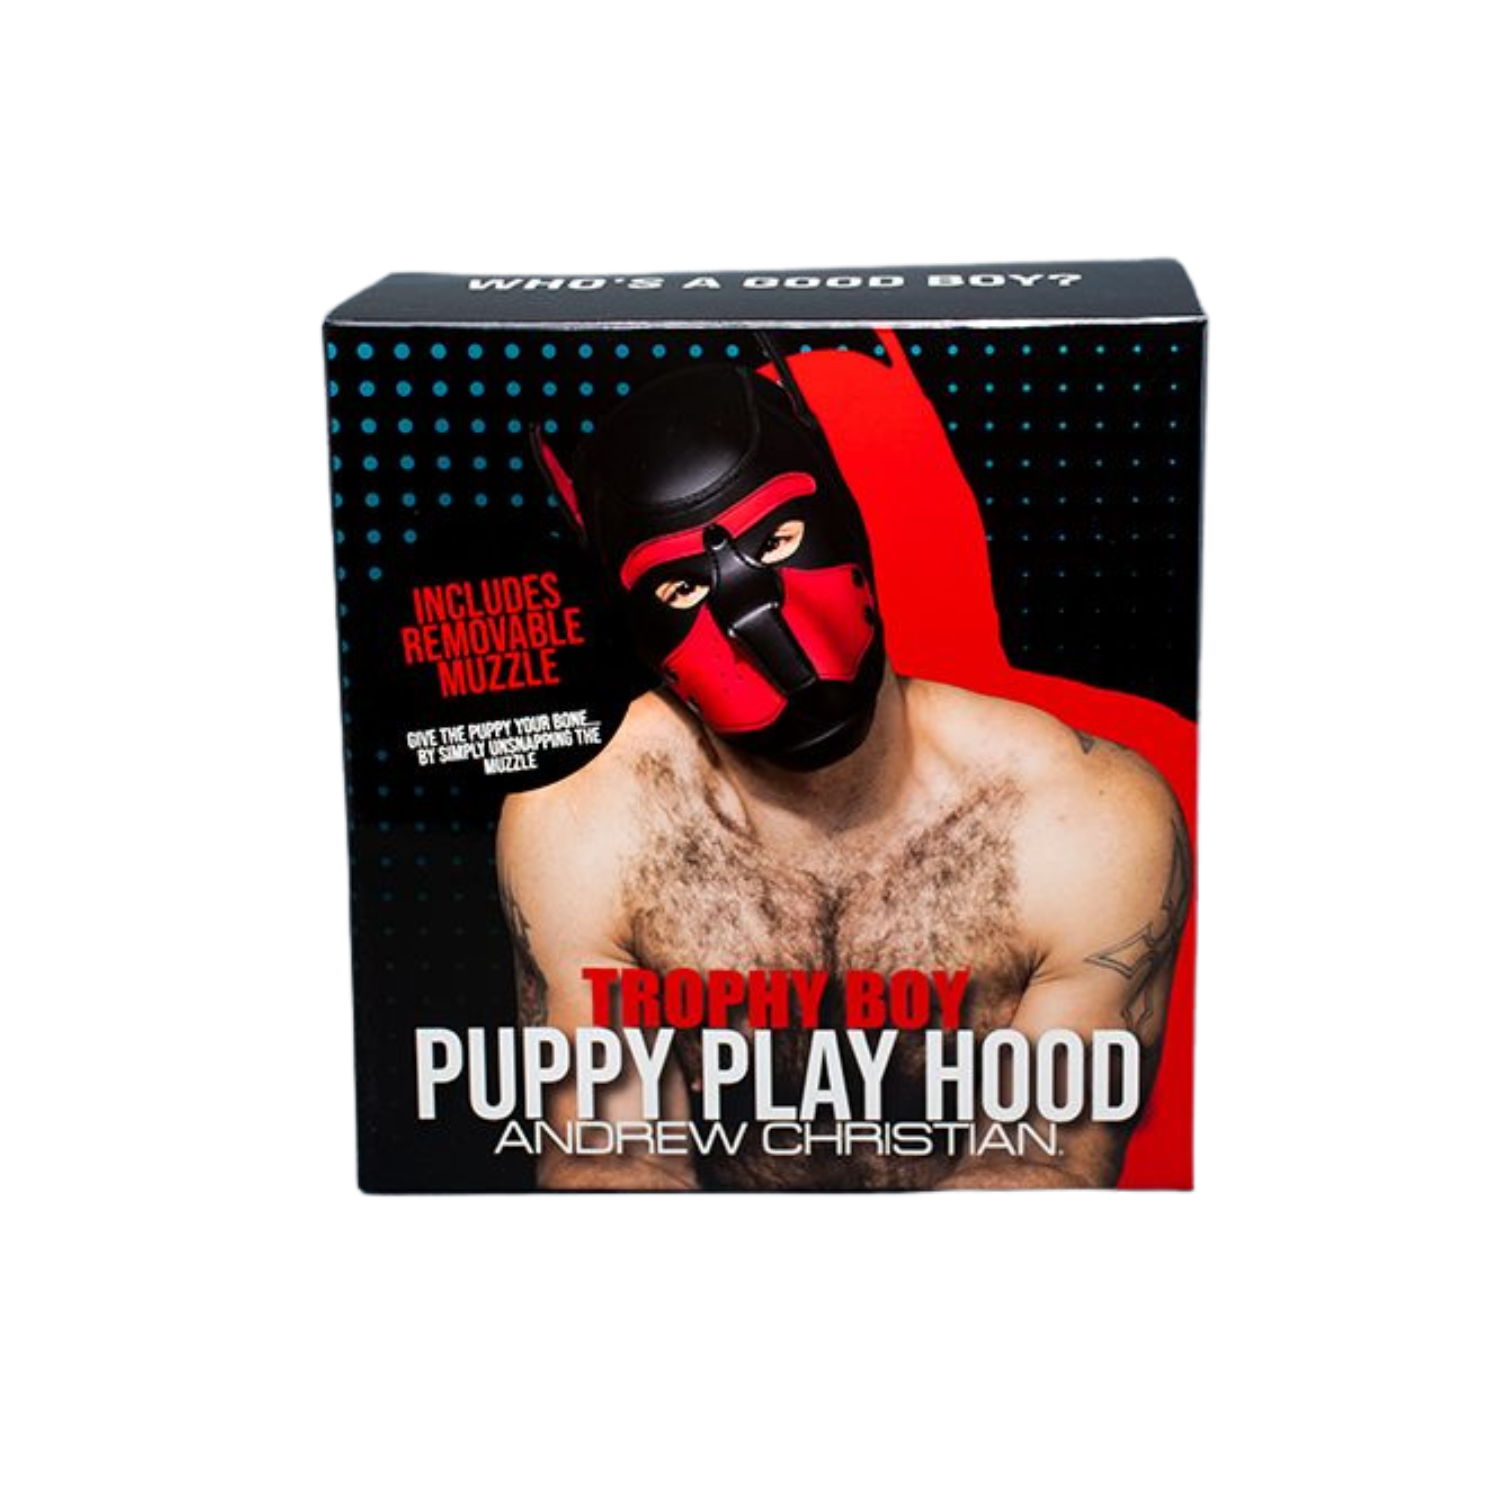 Zwart met rood puppy fetish masker voor mannen ontworpen door Andrew Christian en te koop bij Flavourez.